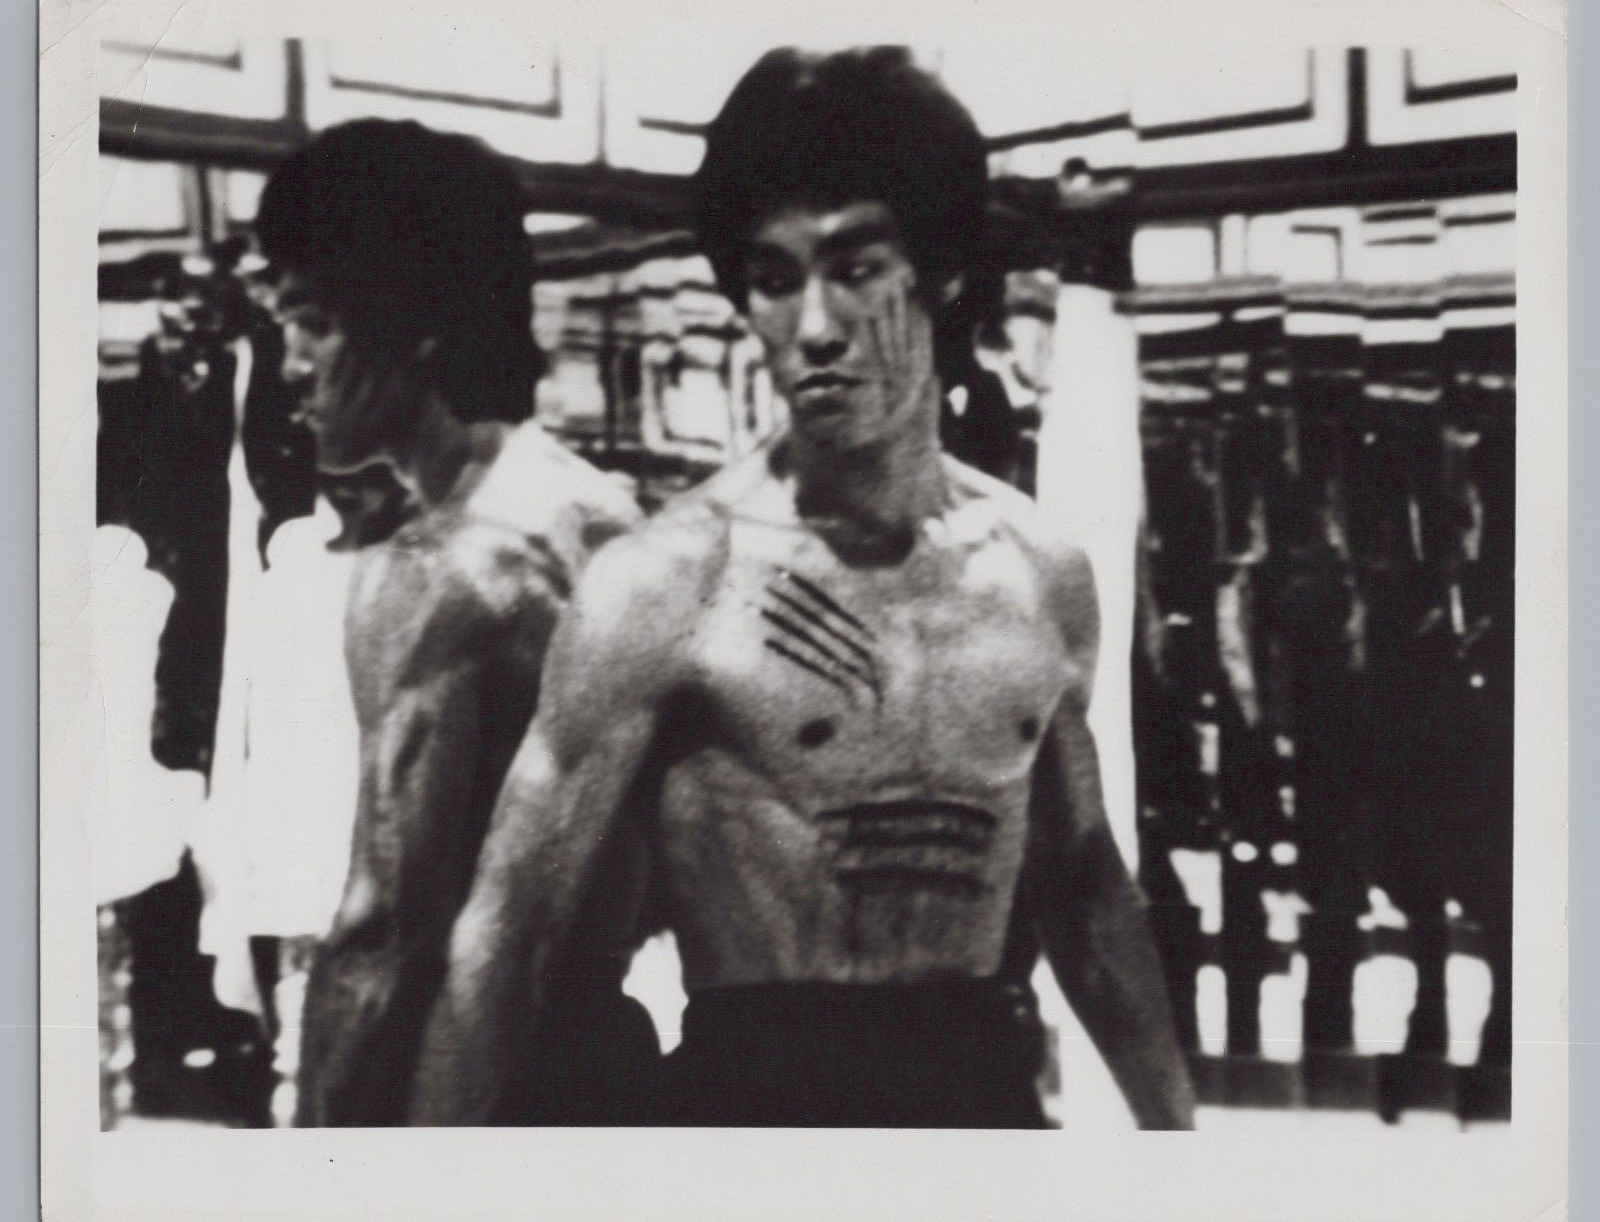 1973 Bruce Lee Enter The Dragon HOLLYWOOD LEGEND KUNG-FU VINTAGE Photo C37